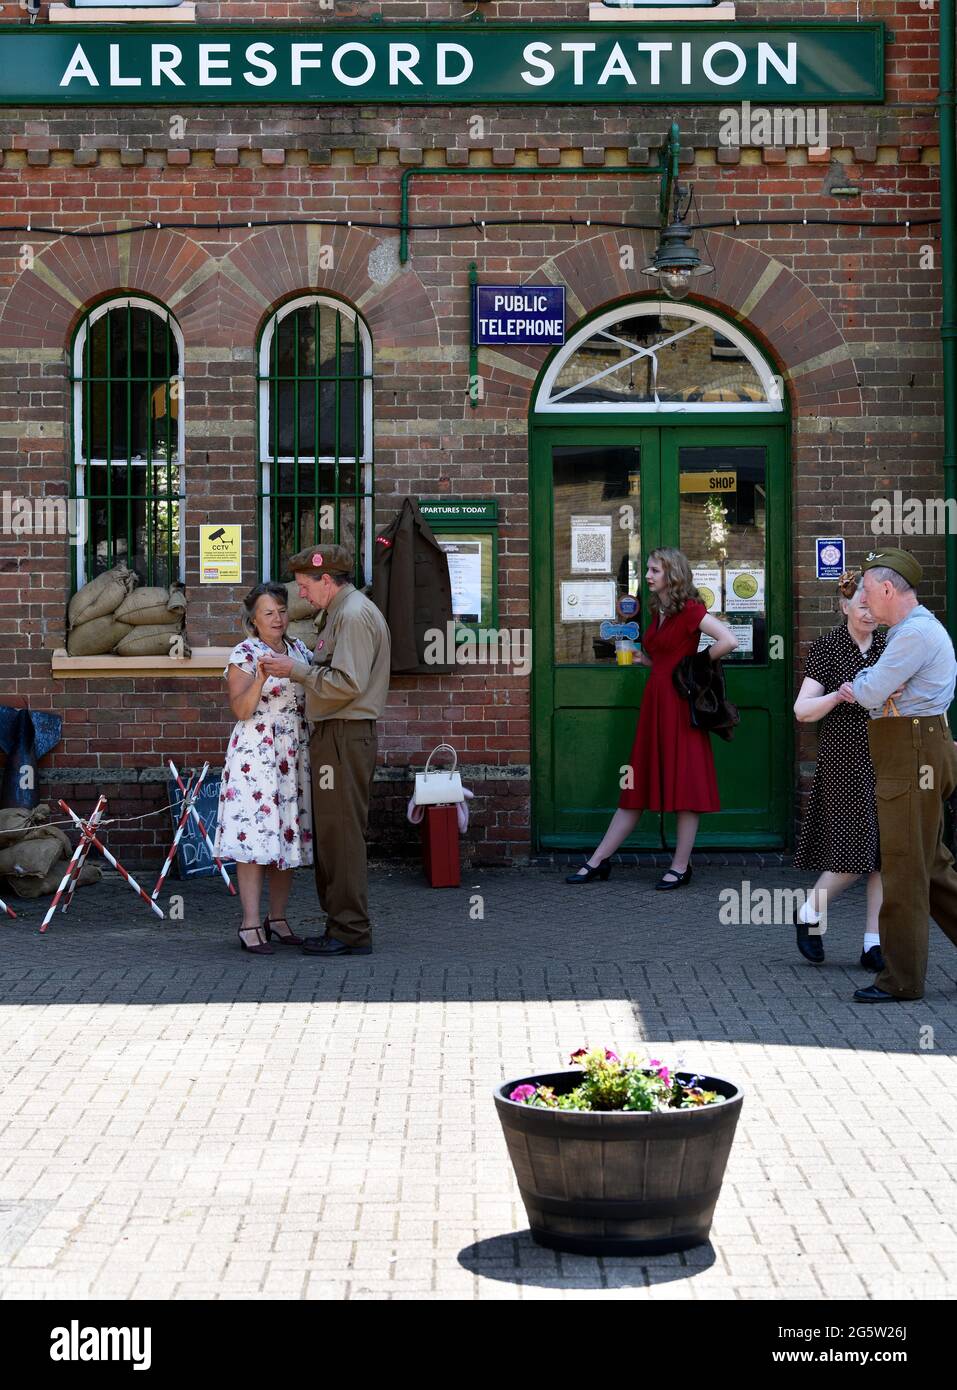 Vue générale de la gare extérieure d'Alresford avec des personnes vêlées dans les années 1940 lors de l'événement annuel War on the Line, Alresford, Hampshire, Royaume-Uni. Banque D'Images